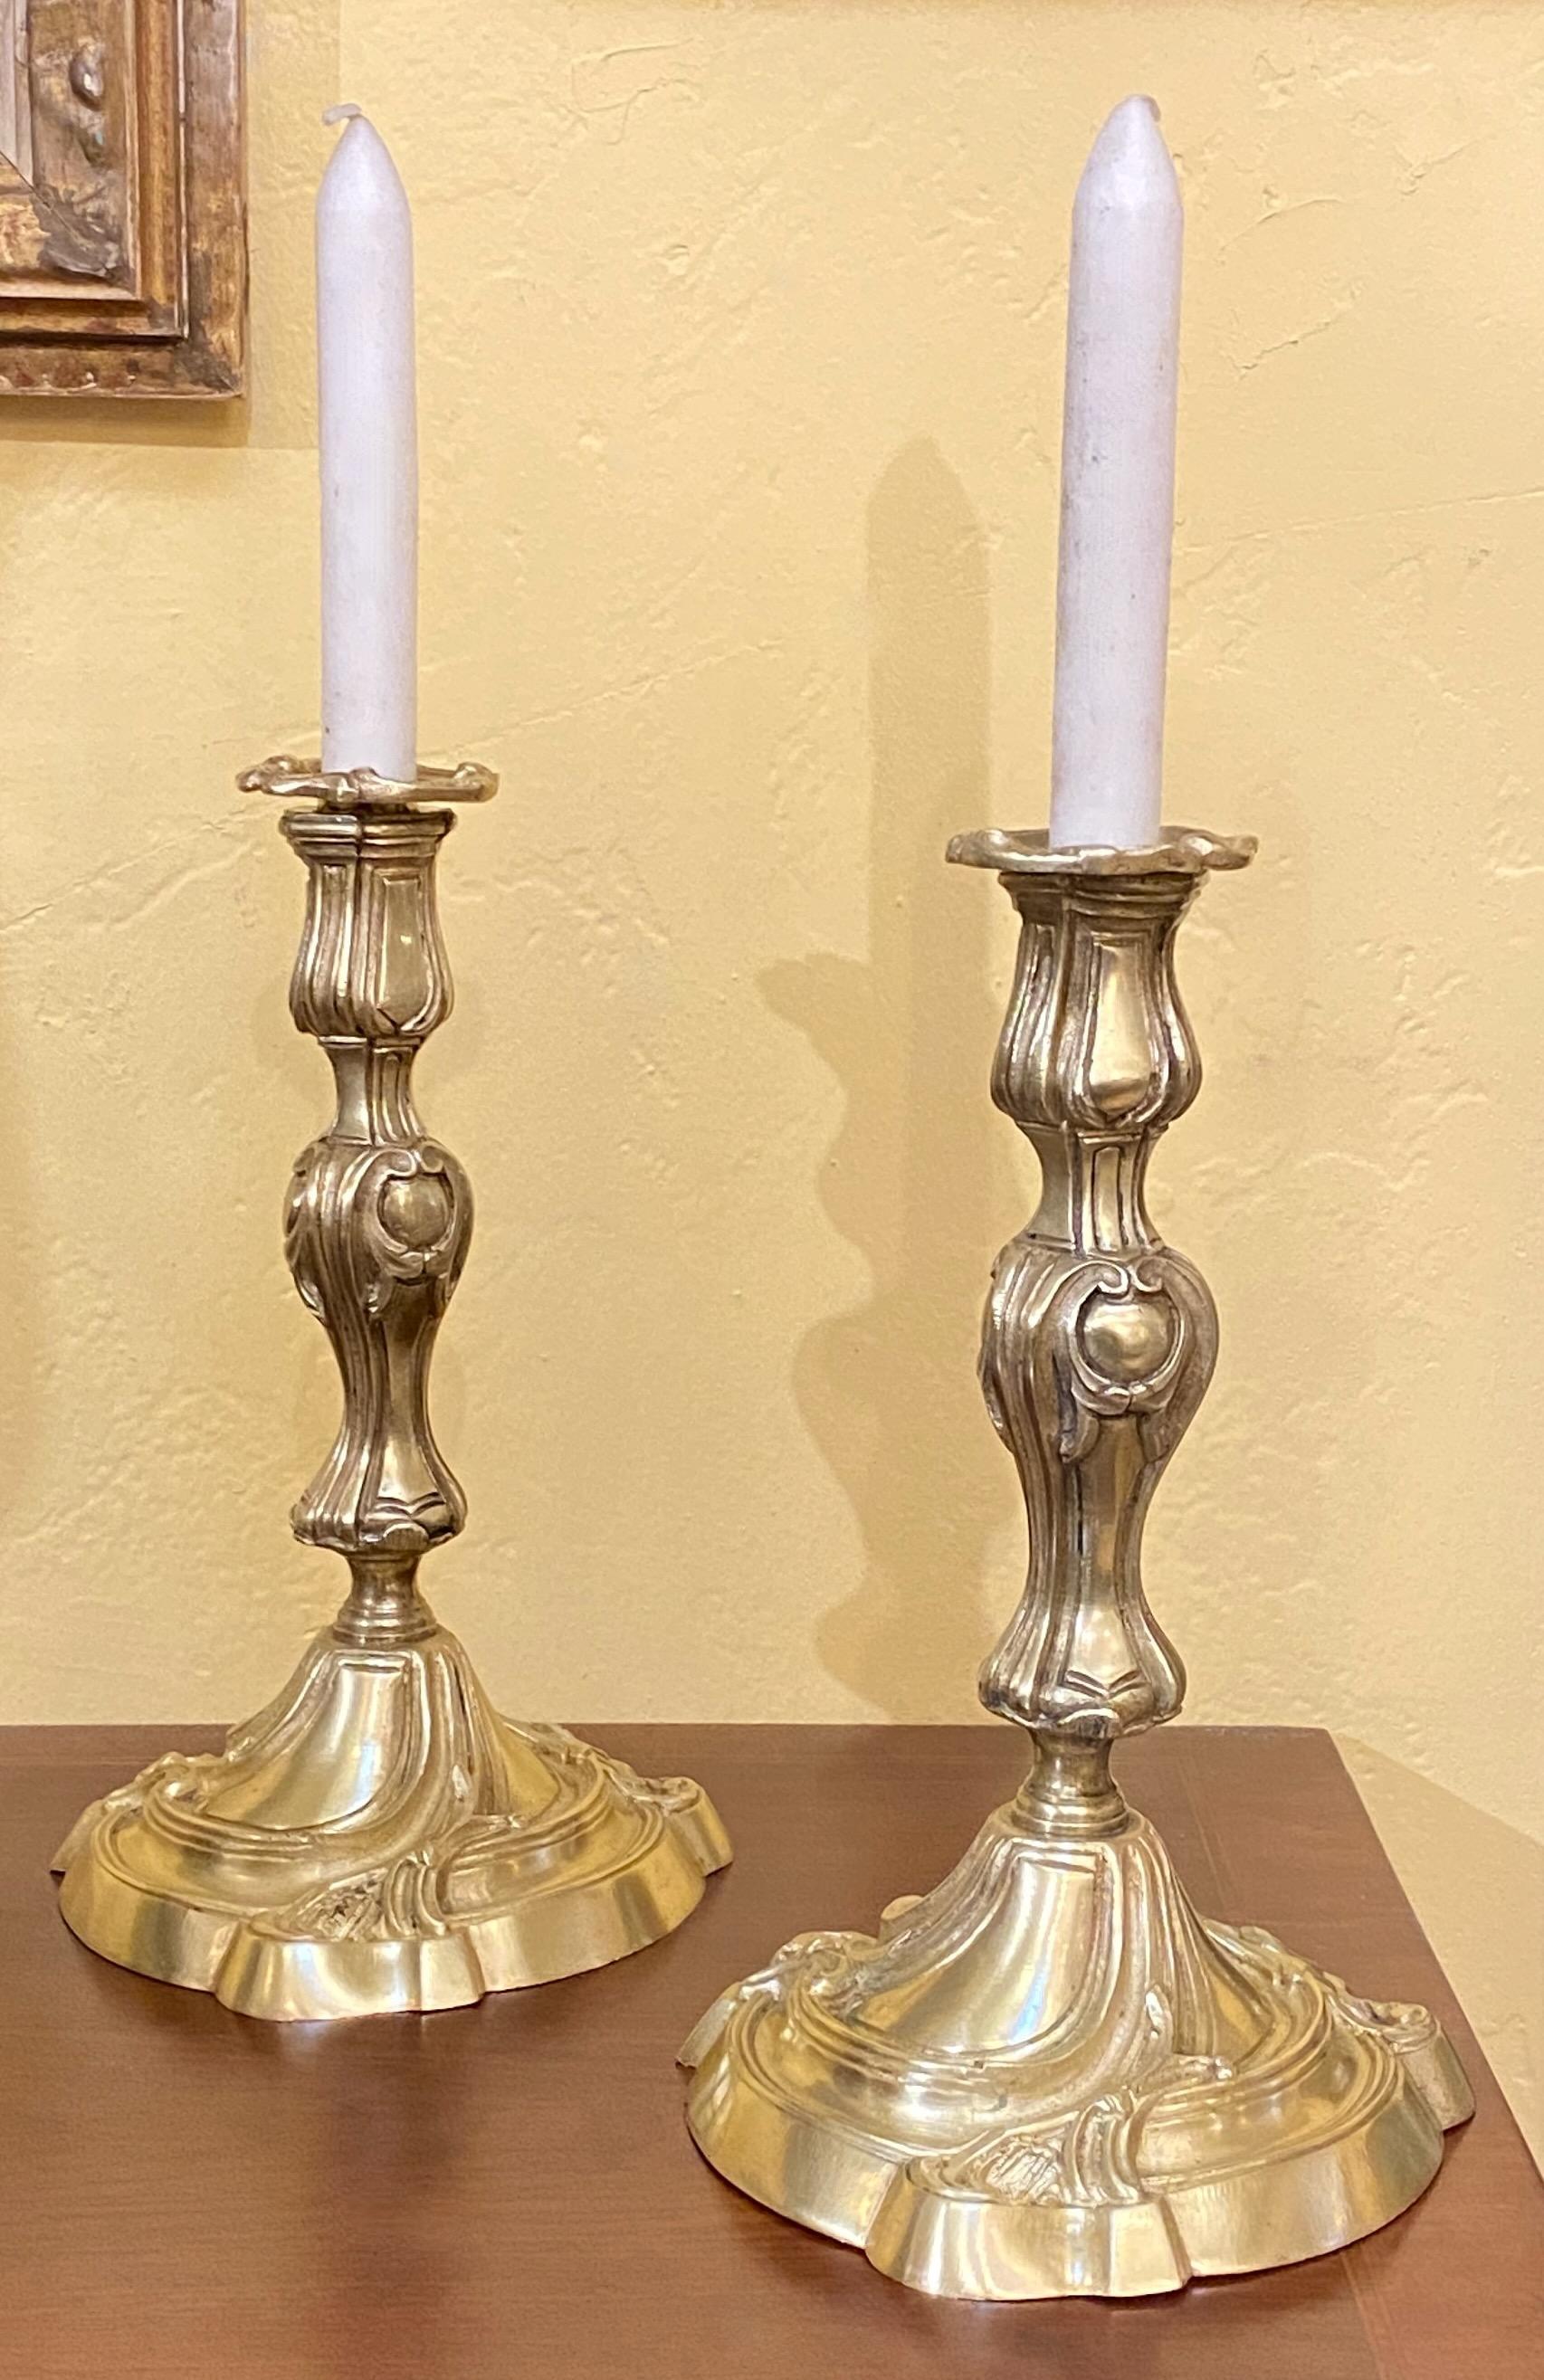 Une paire de chandeliers en laiton de style baroque français avec ciselure à la main.
Elles ont été câblées pour des lampes de boudoir au cours du 20e siècle et nous pouvons les électrifier à nouveau si vous le souhaitez (pour une somme